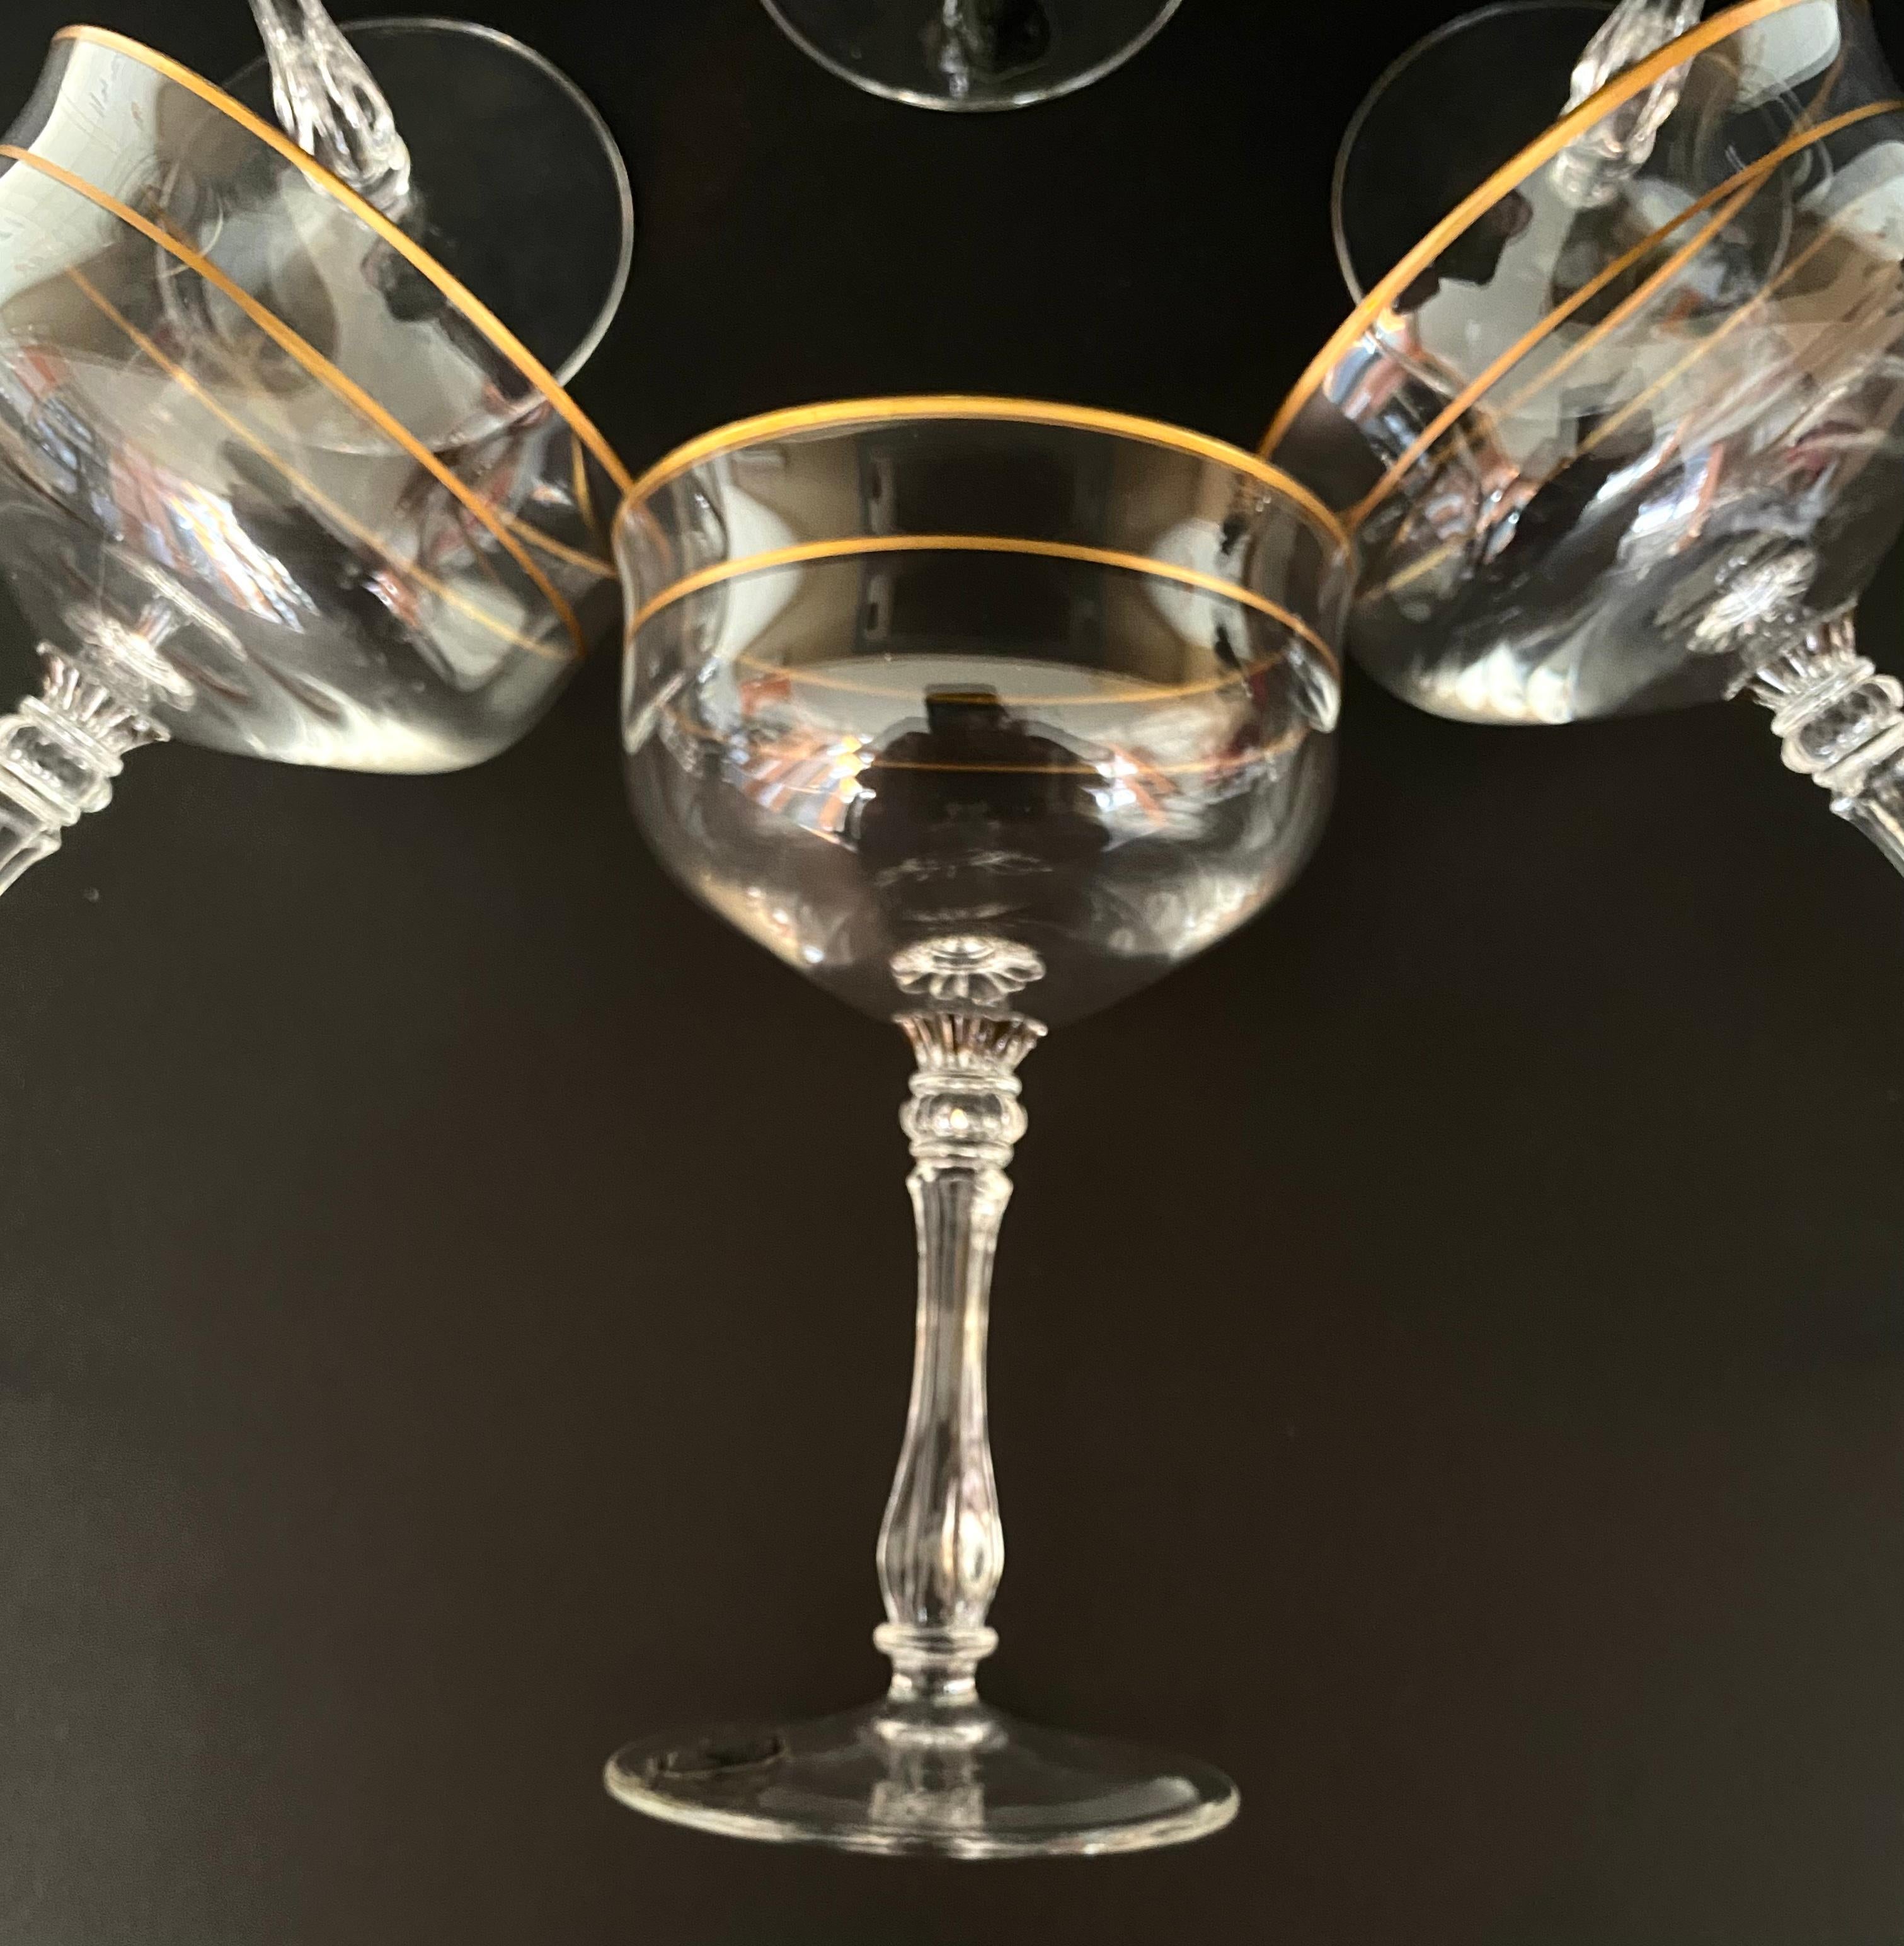 Schöne Vintage-Champagnergläser aus der berühmten deutschen Manufaktur Gallo, um 1970, aus klarem Kristall mit goldenem Rand.

Dieses Set aus 6 Gläsern hat ein elegantes Aussehen und eignet sich perfekt zum Servieren eines festlichen